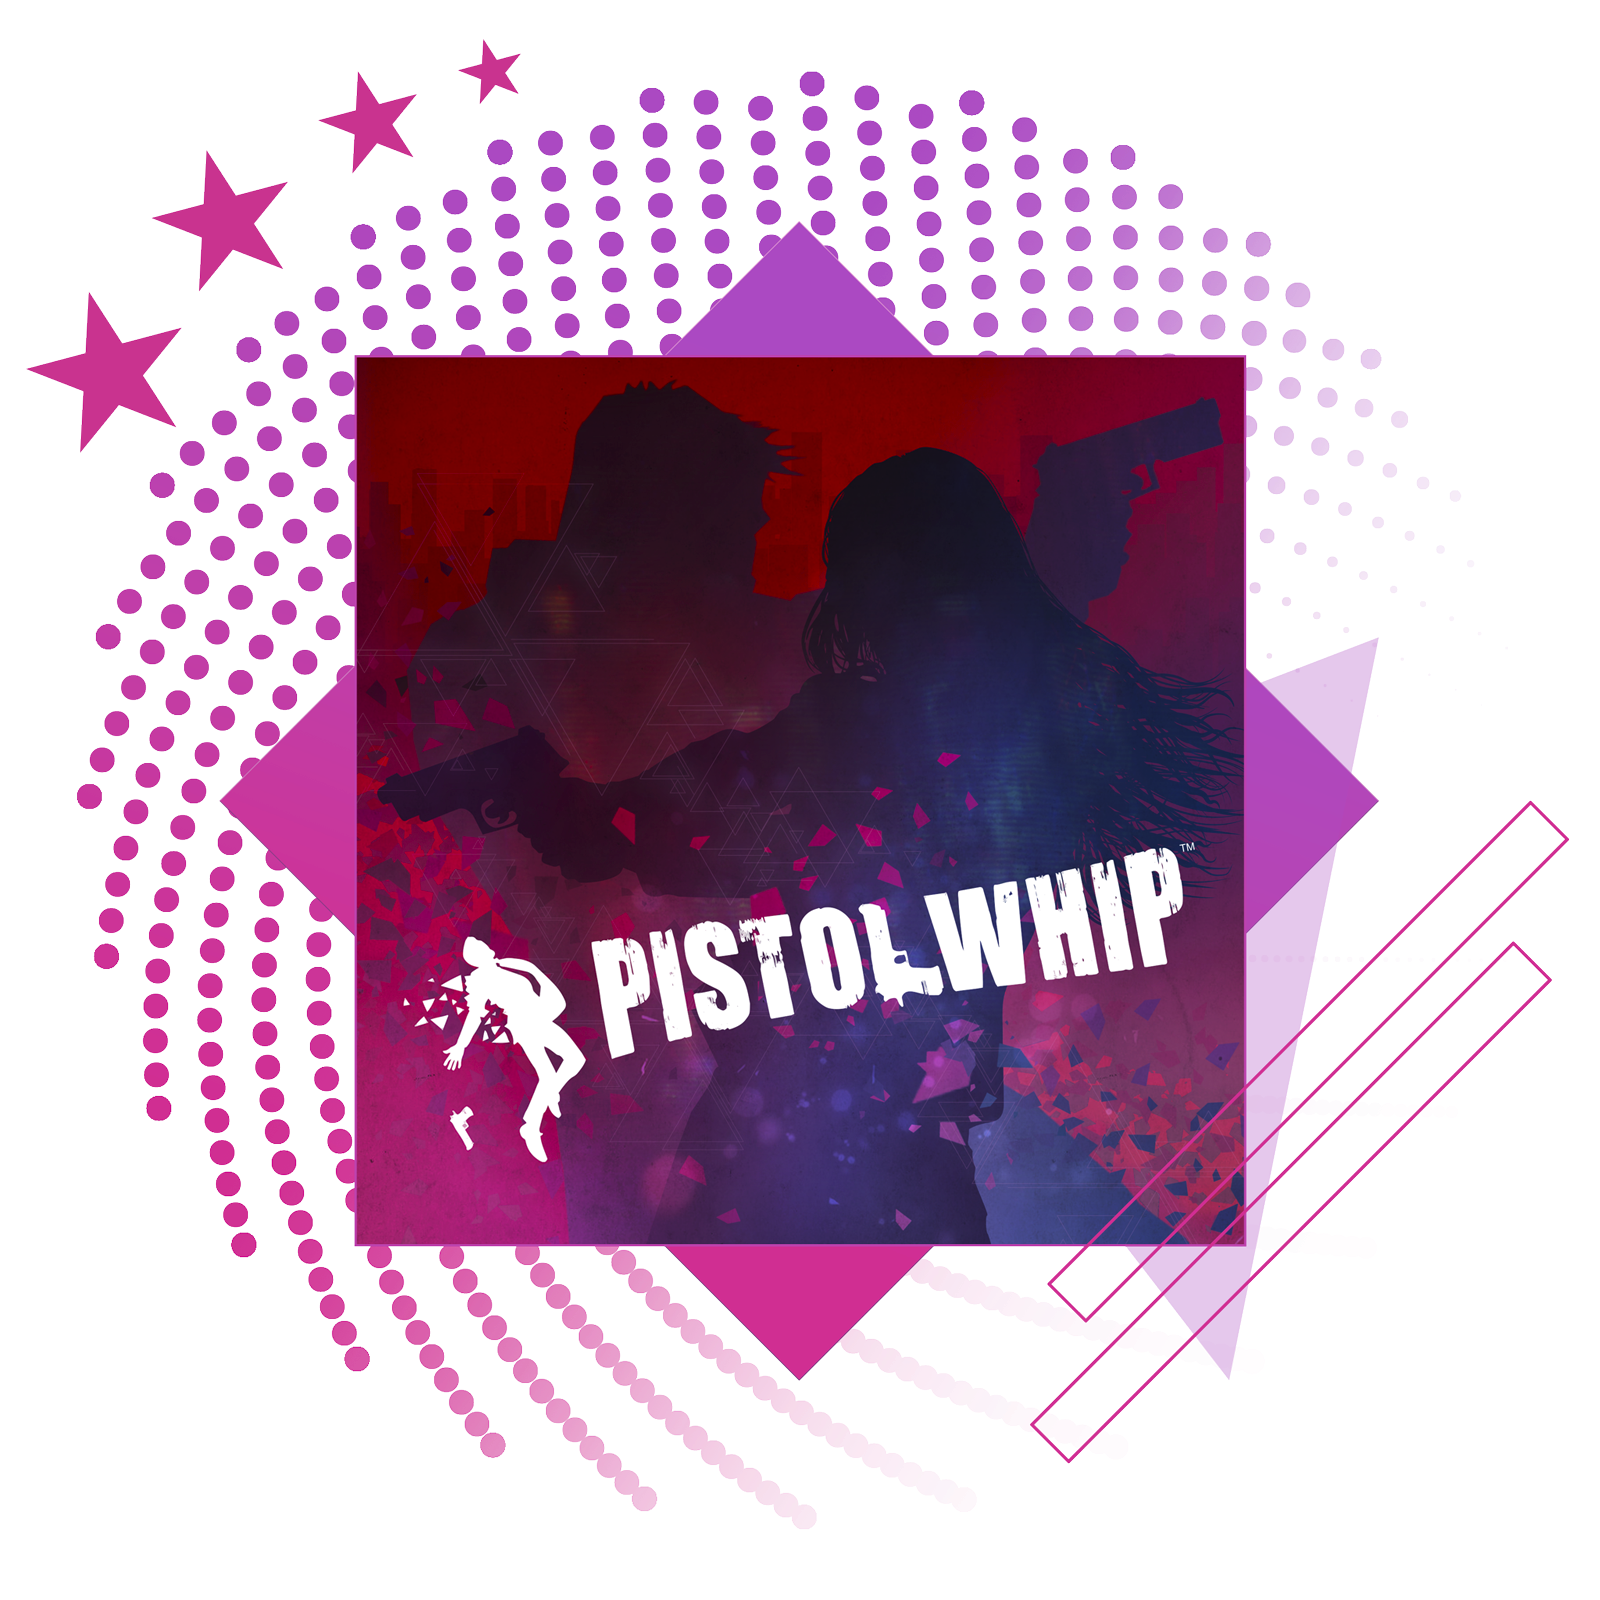 Kép a legjobb ritmusjátékok cikkhez, a Pistol Whip fő grafikájával.